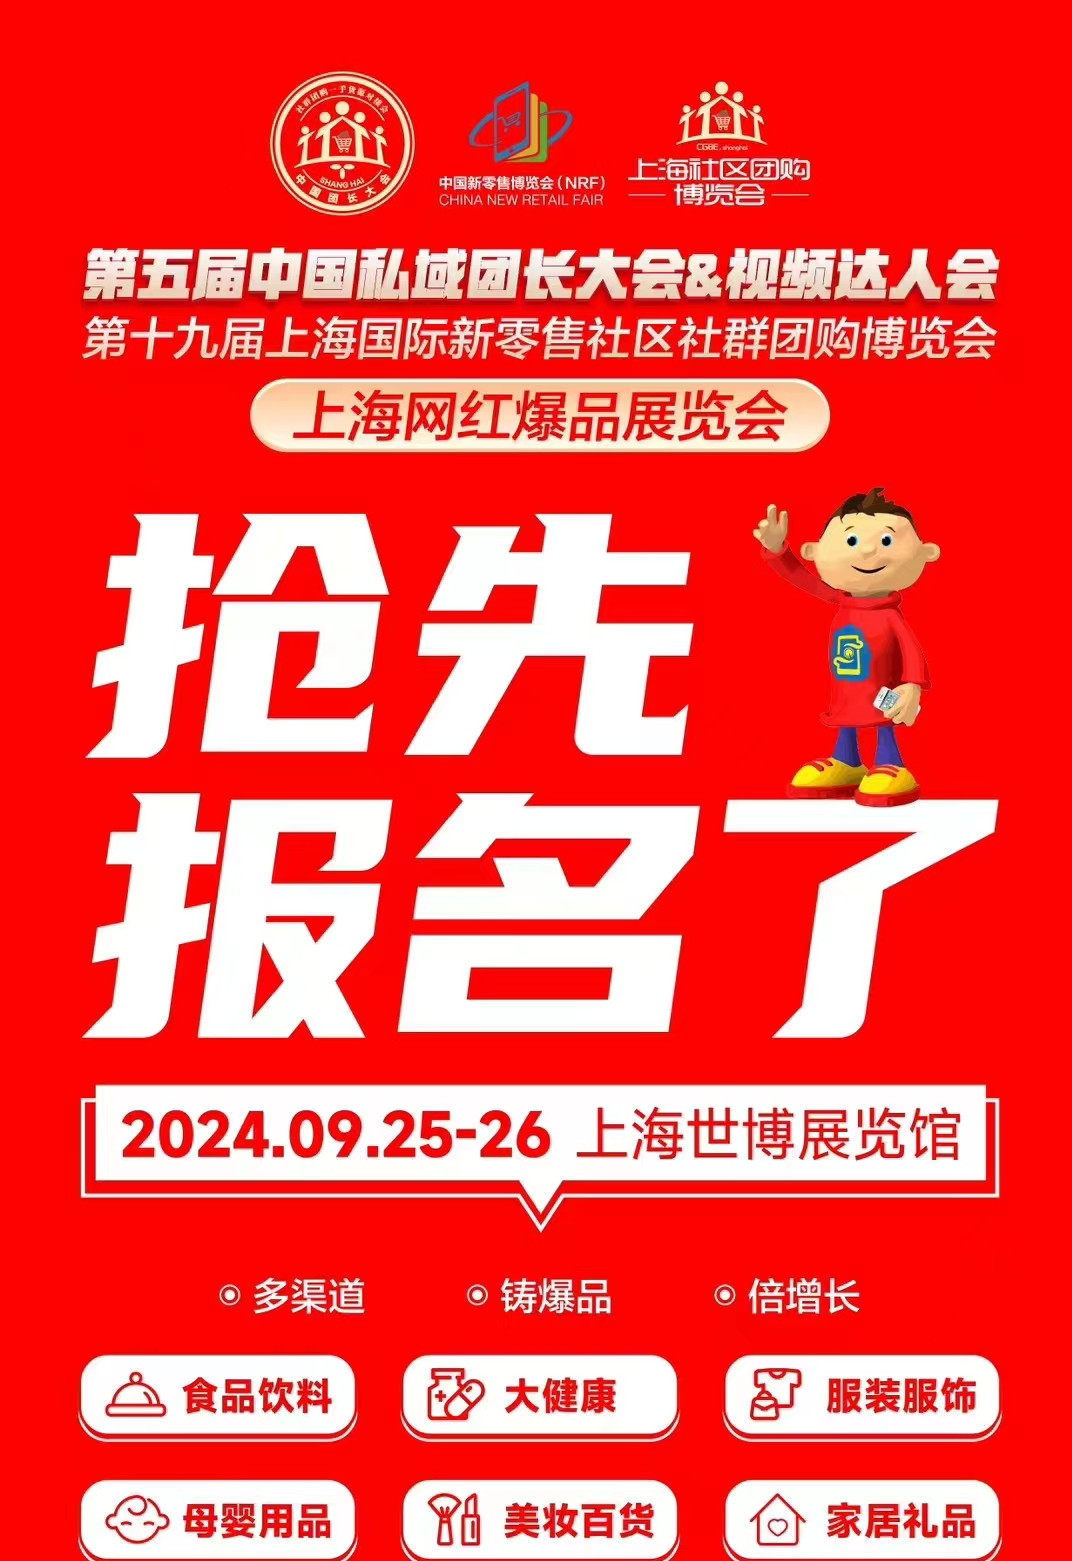 第五届中国团长大会&视频达人大会将于9月25日-26日在沪盛大举办..